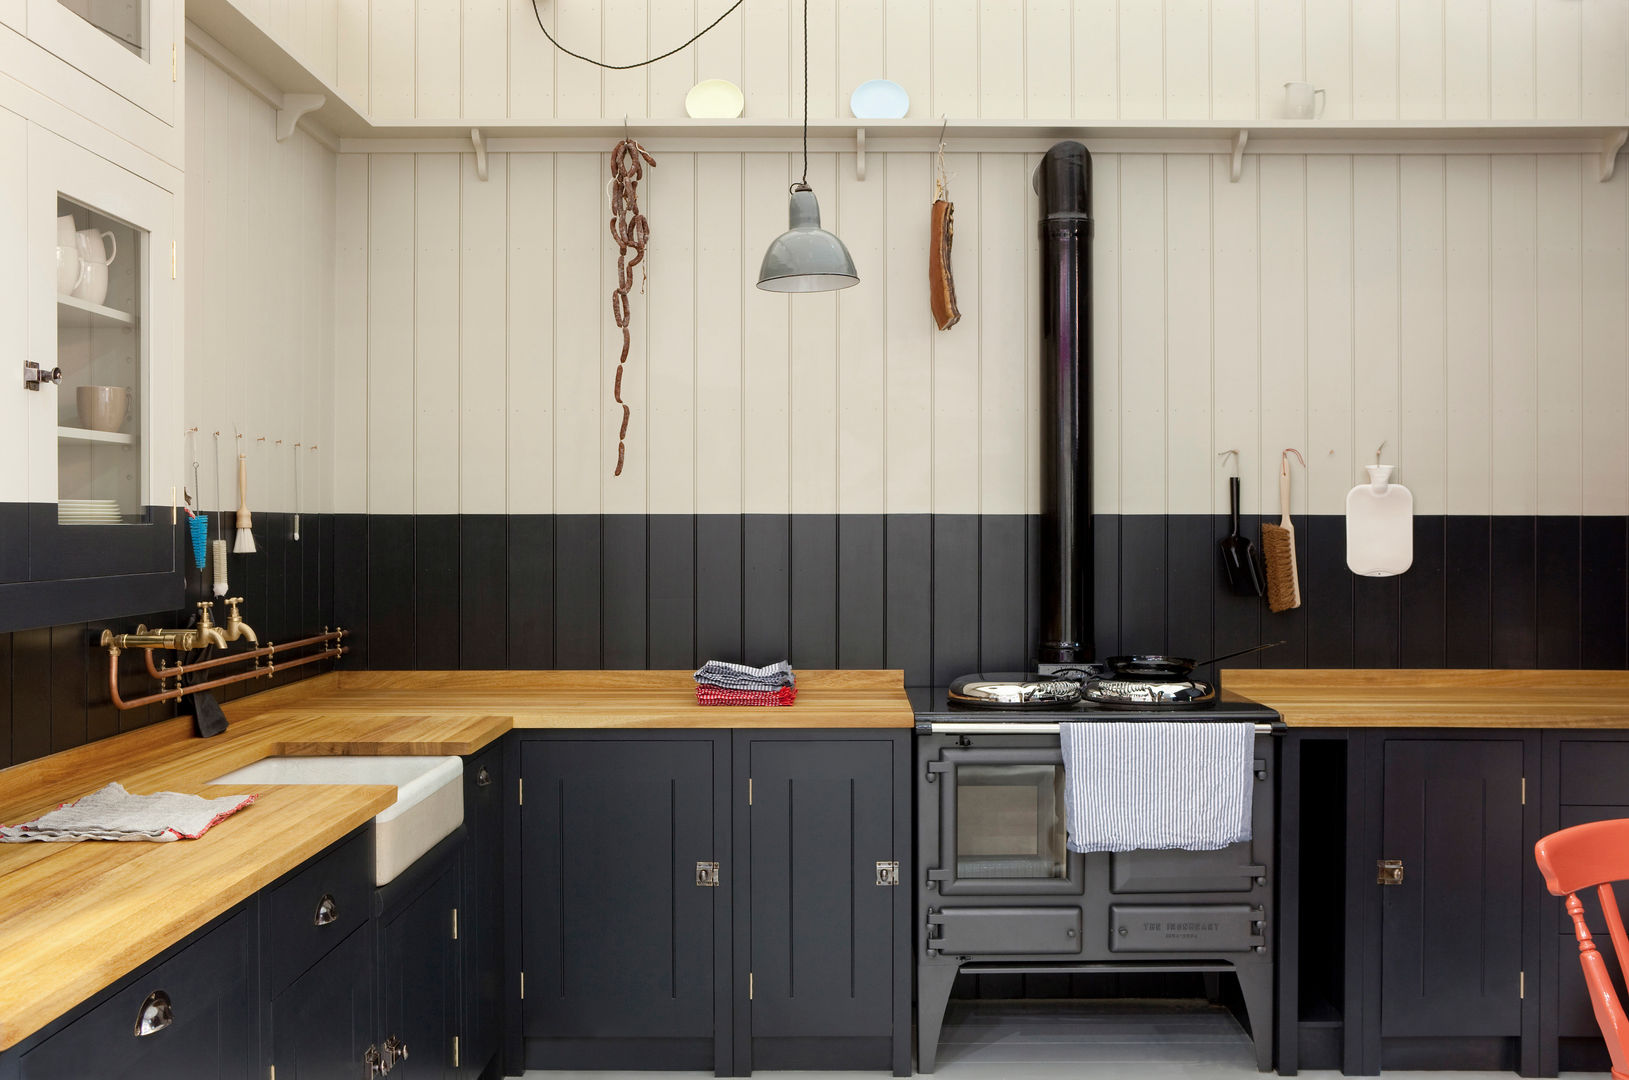 The Original British Standard Kitchen British Standard by Plain English Kitchen Wood Wood effect